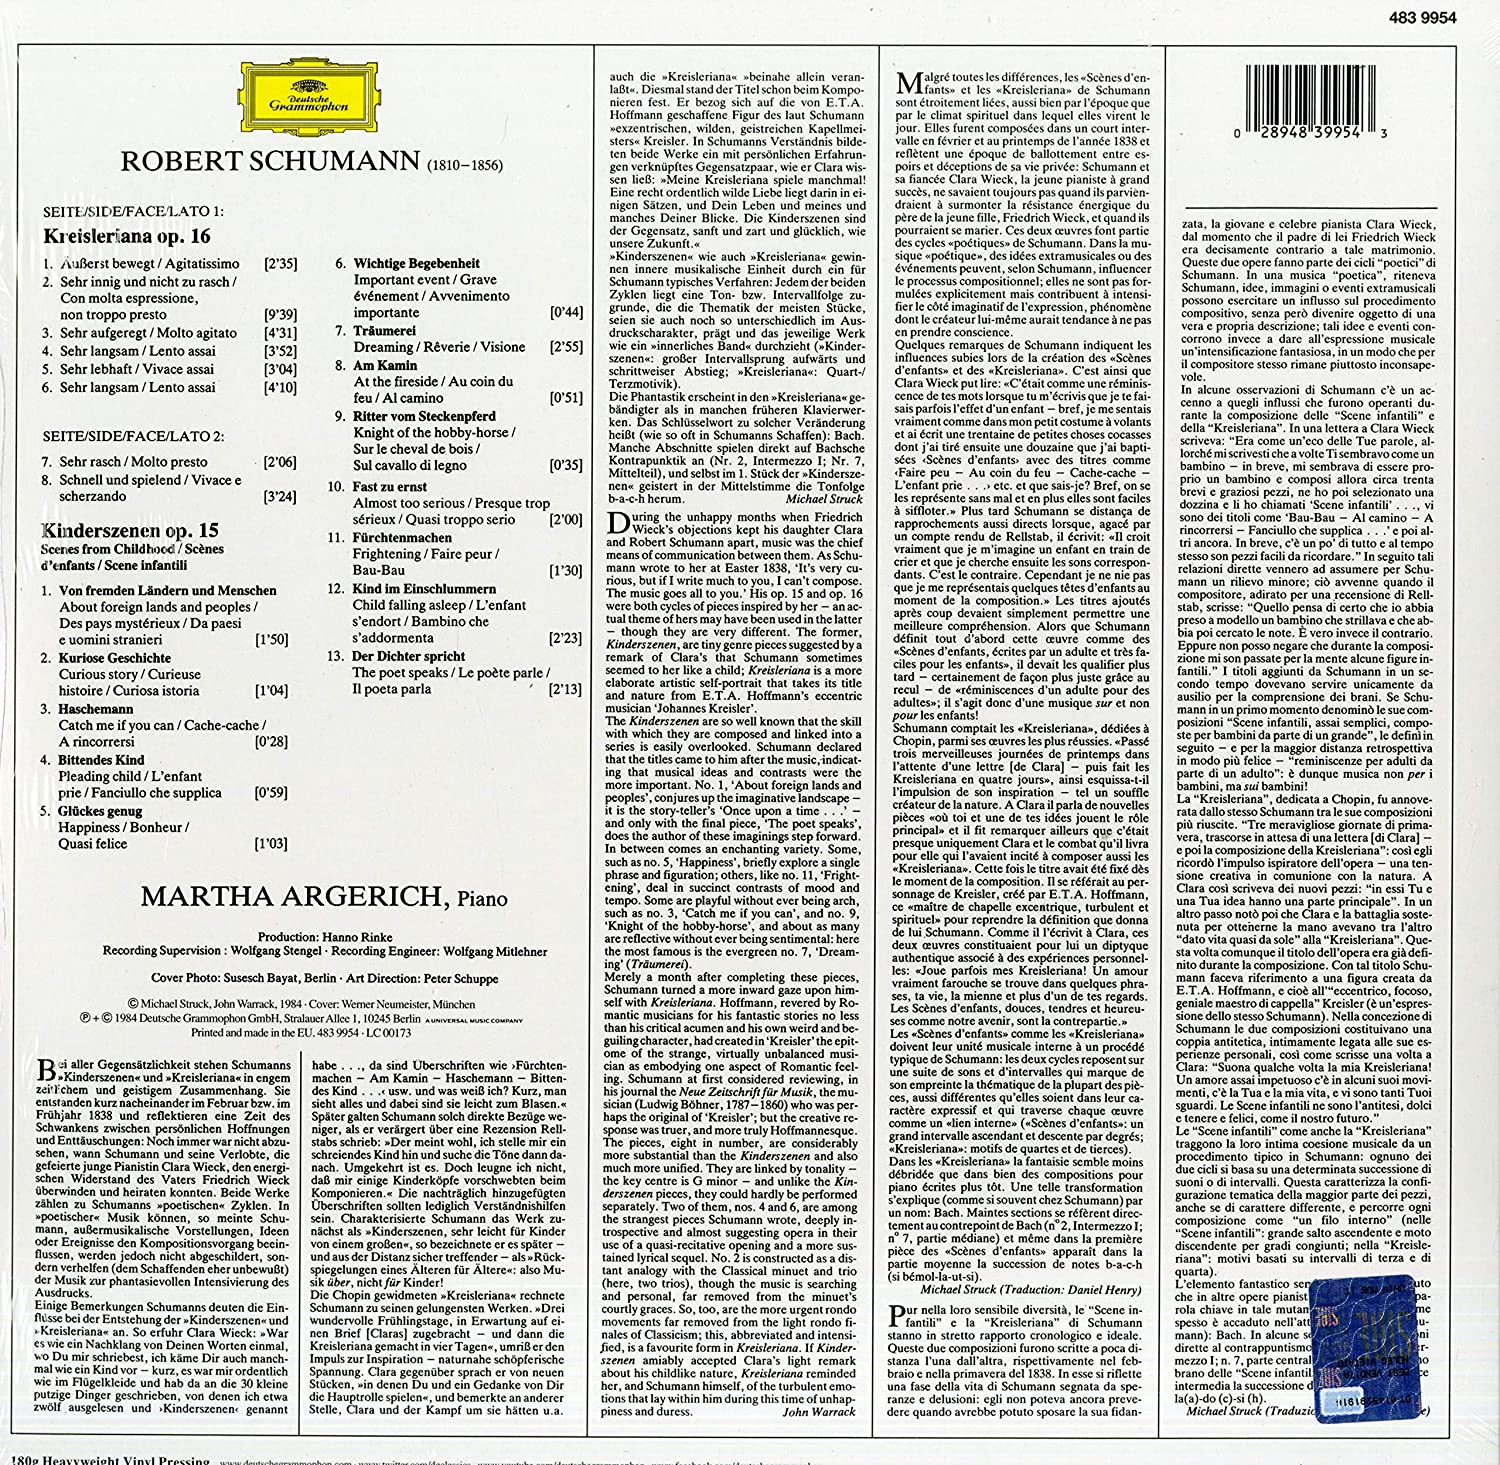 Martha Argerich – Kinderszenen; Kreisleriana - Vinyl | Martha Argerich